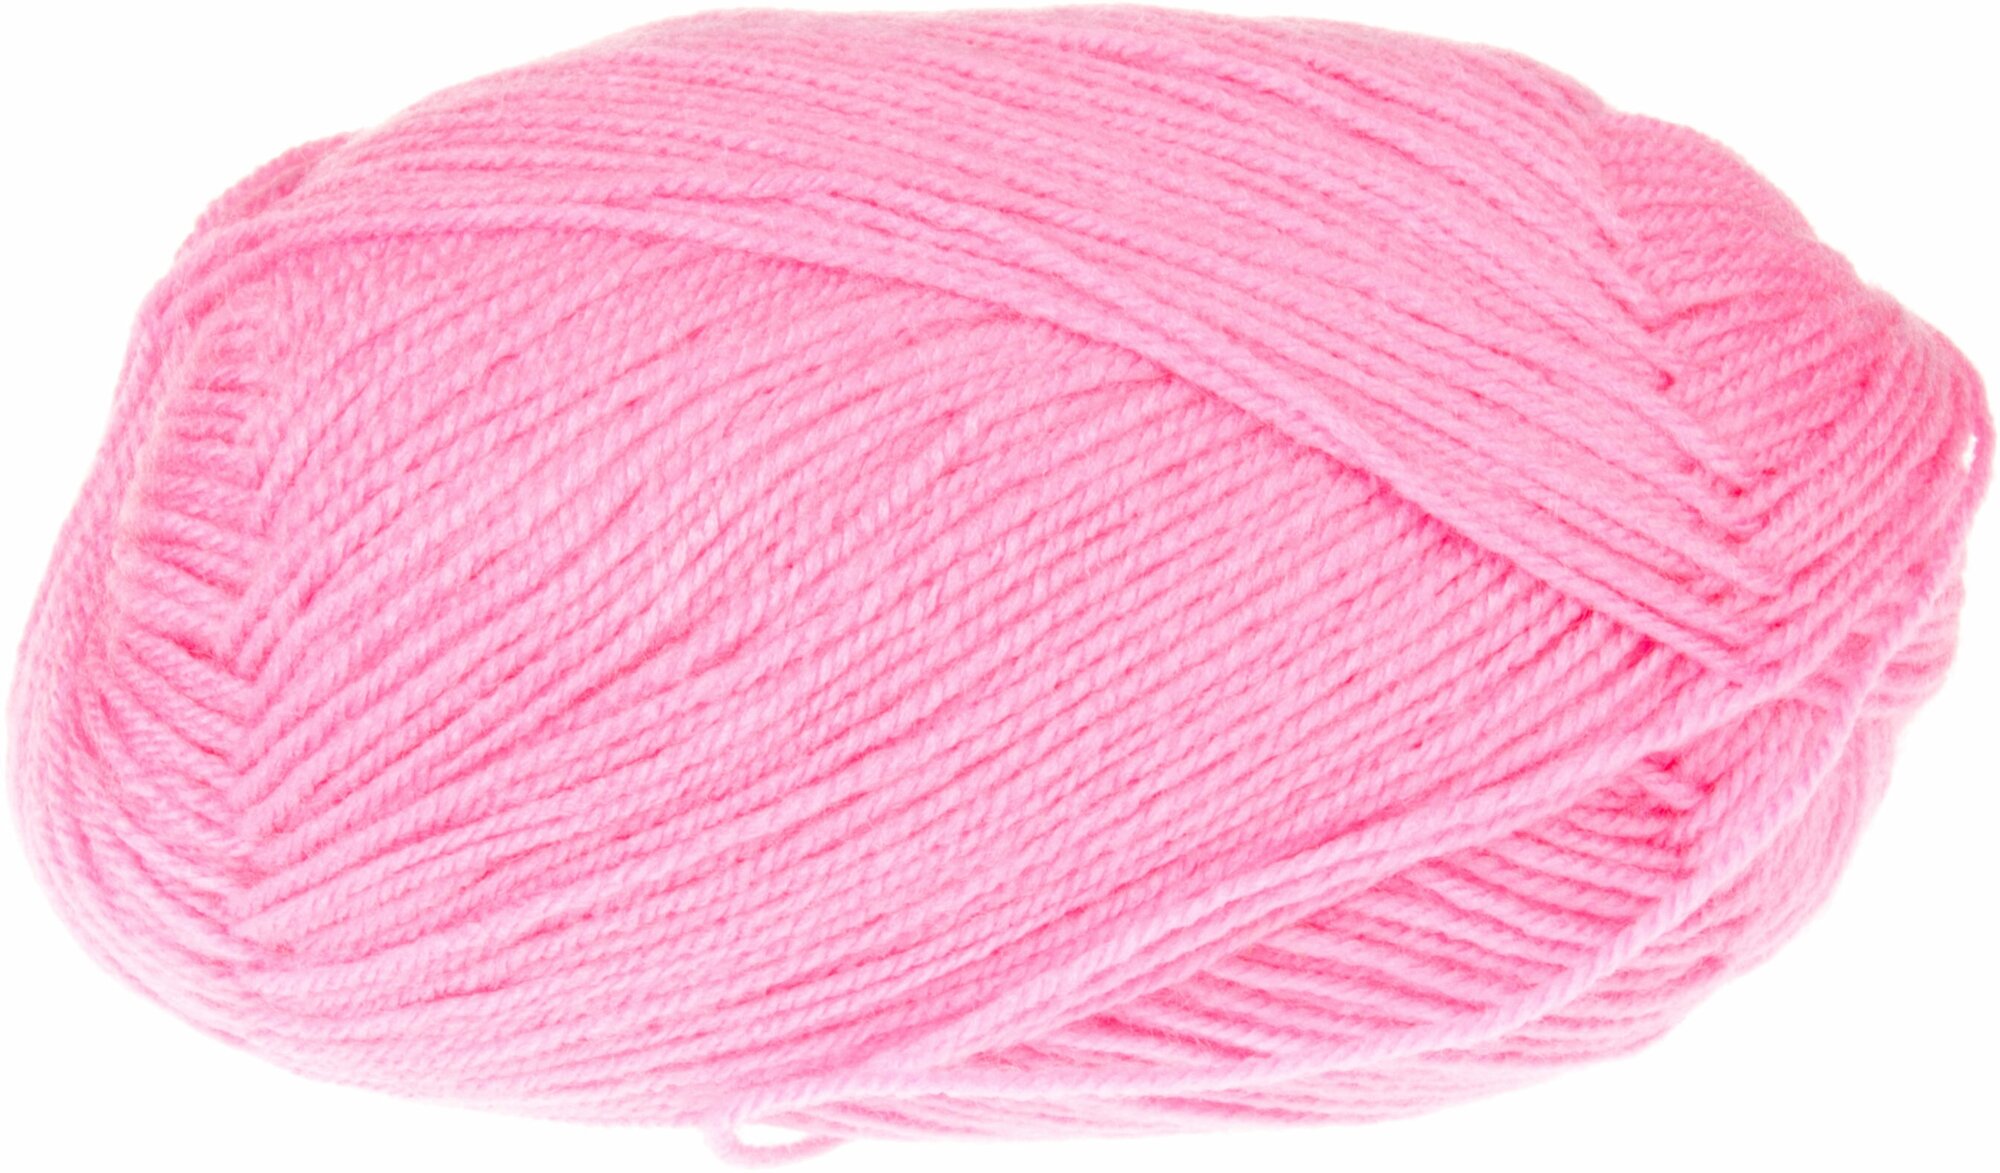 Пряжа Пехорка Детская новинка ярко-розовый (11), 100%высокообъемный акрил, 200м, 50г, 3шт